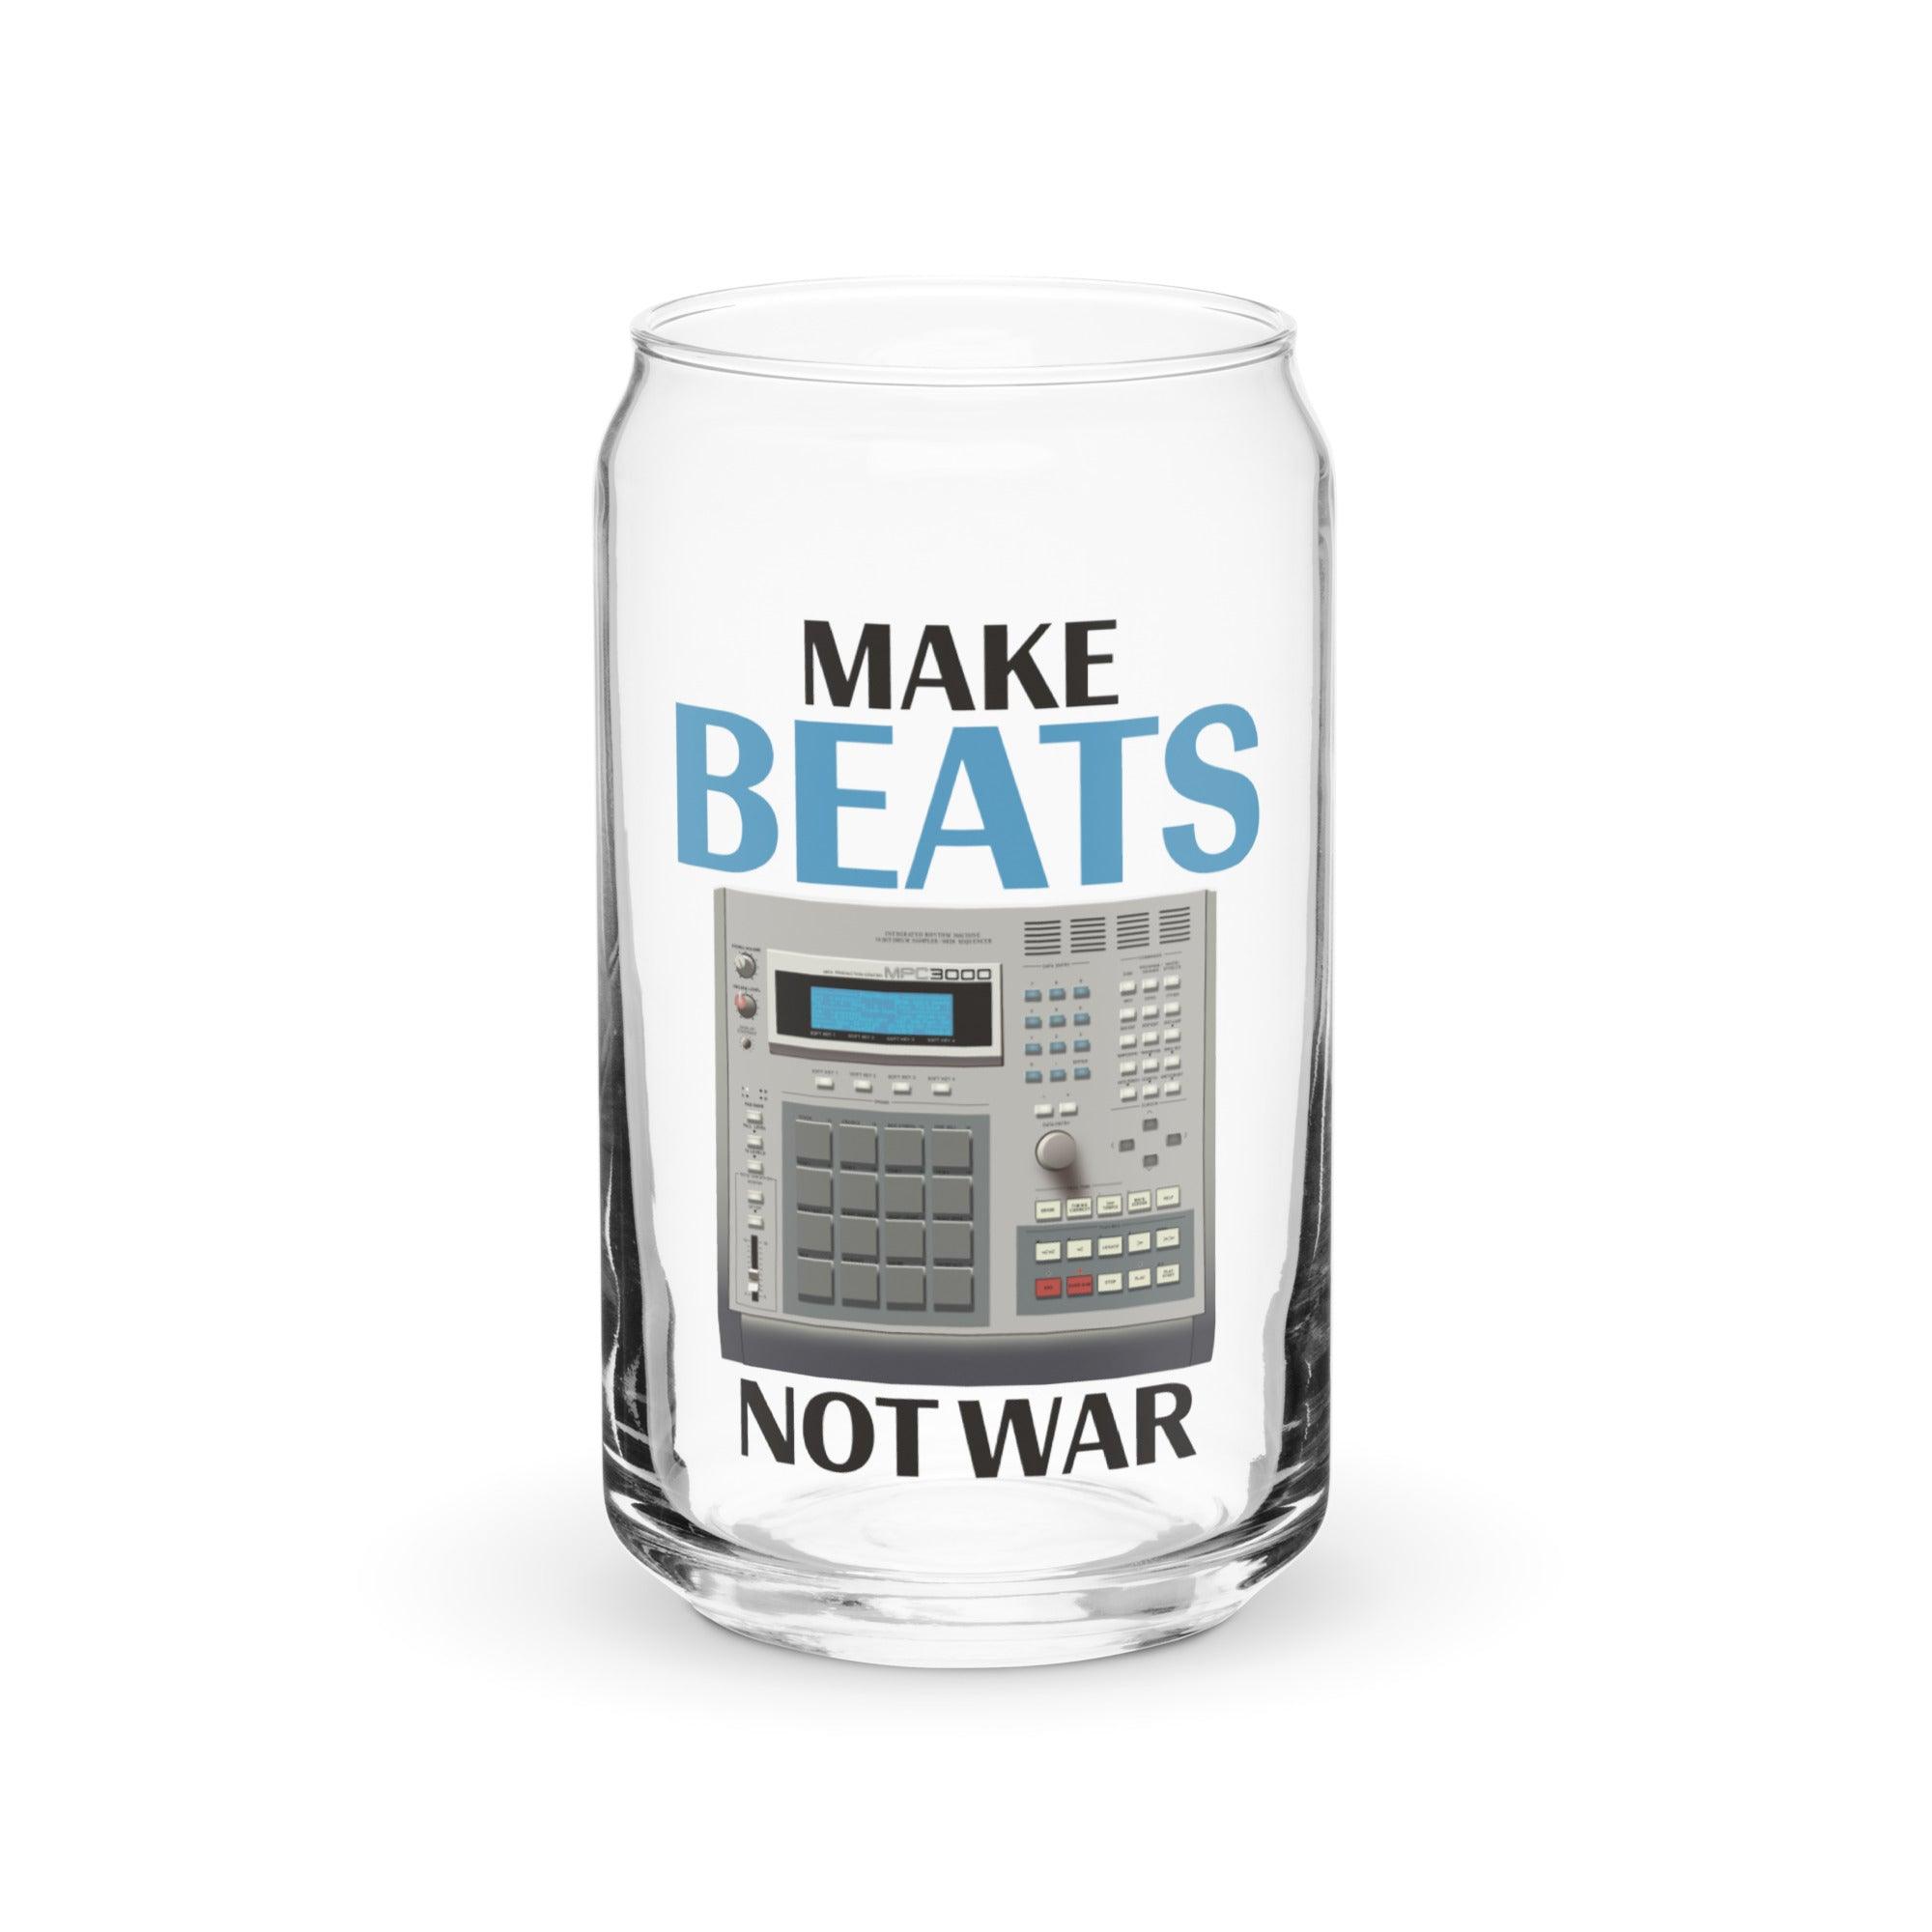 Akai MPC3000 Artist Rendition Drum Machine "Make Beats Not War" Can-Shaped Glass (16 oz.) - Tedeschi Studio, LLC.